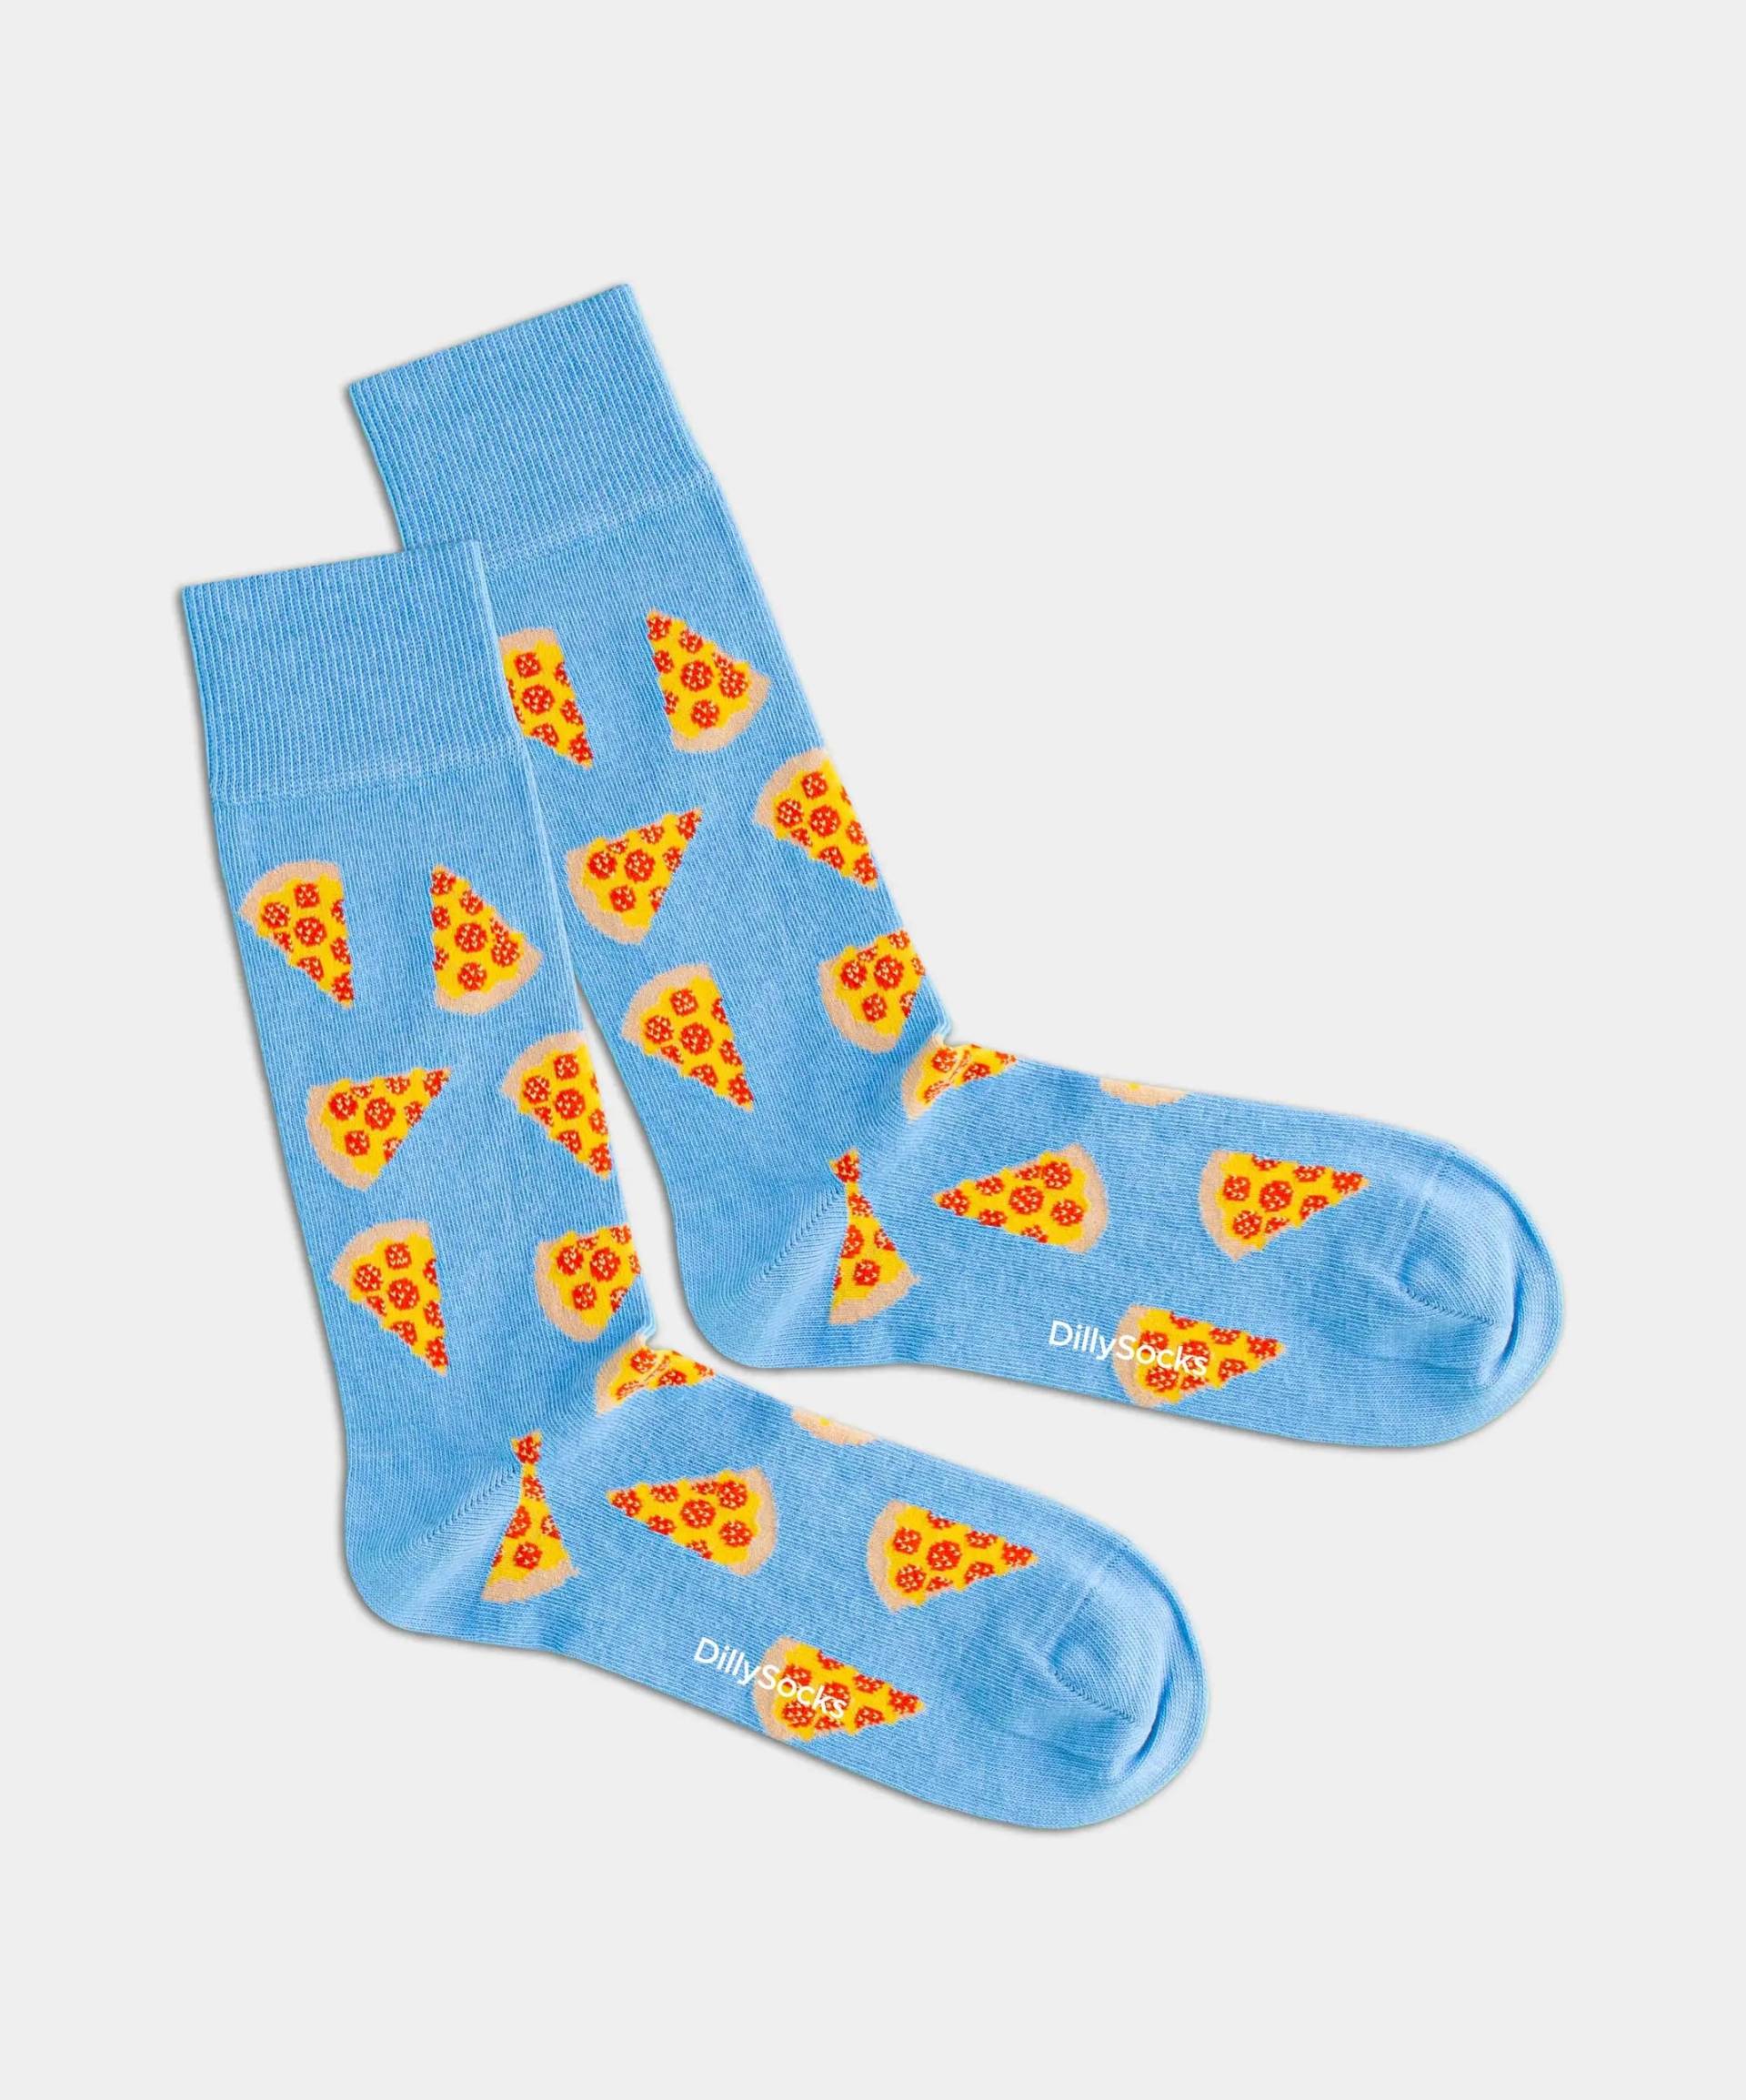 - Socken in Blau mit Essen Motiv/Muster von DillySocks